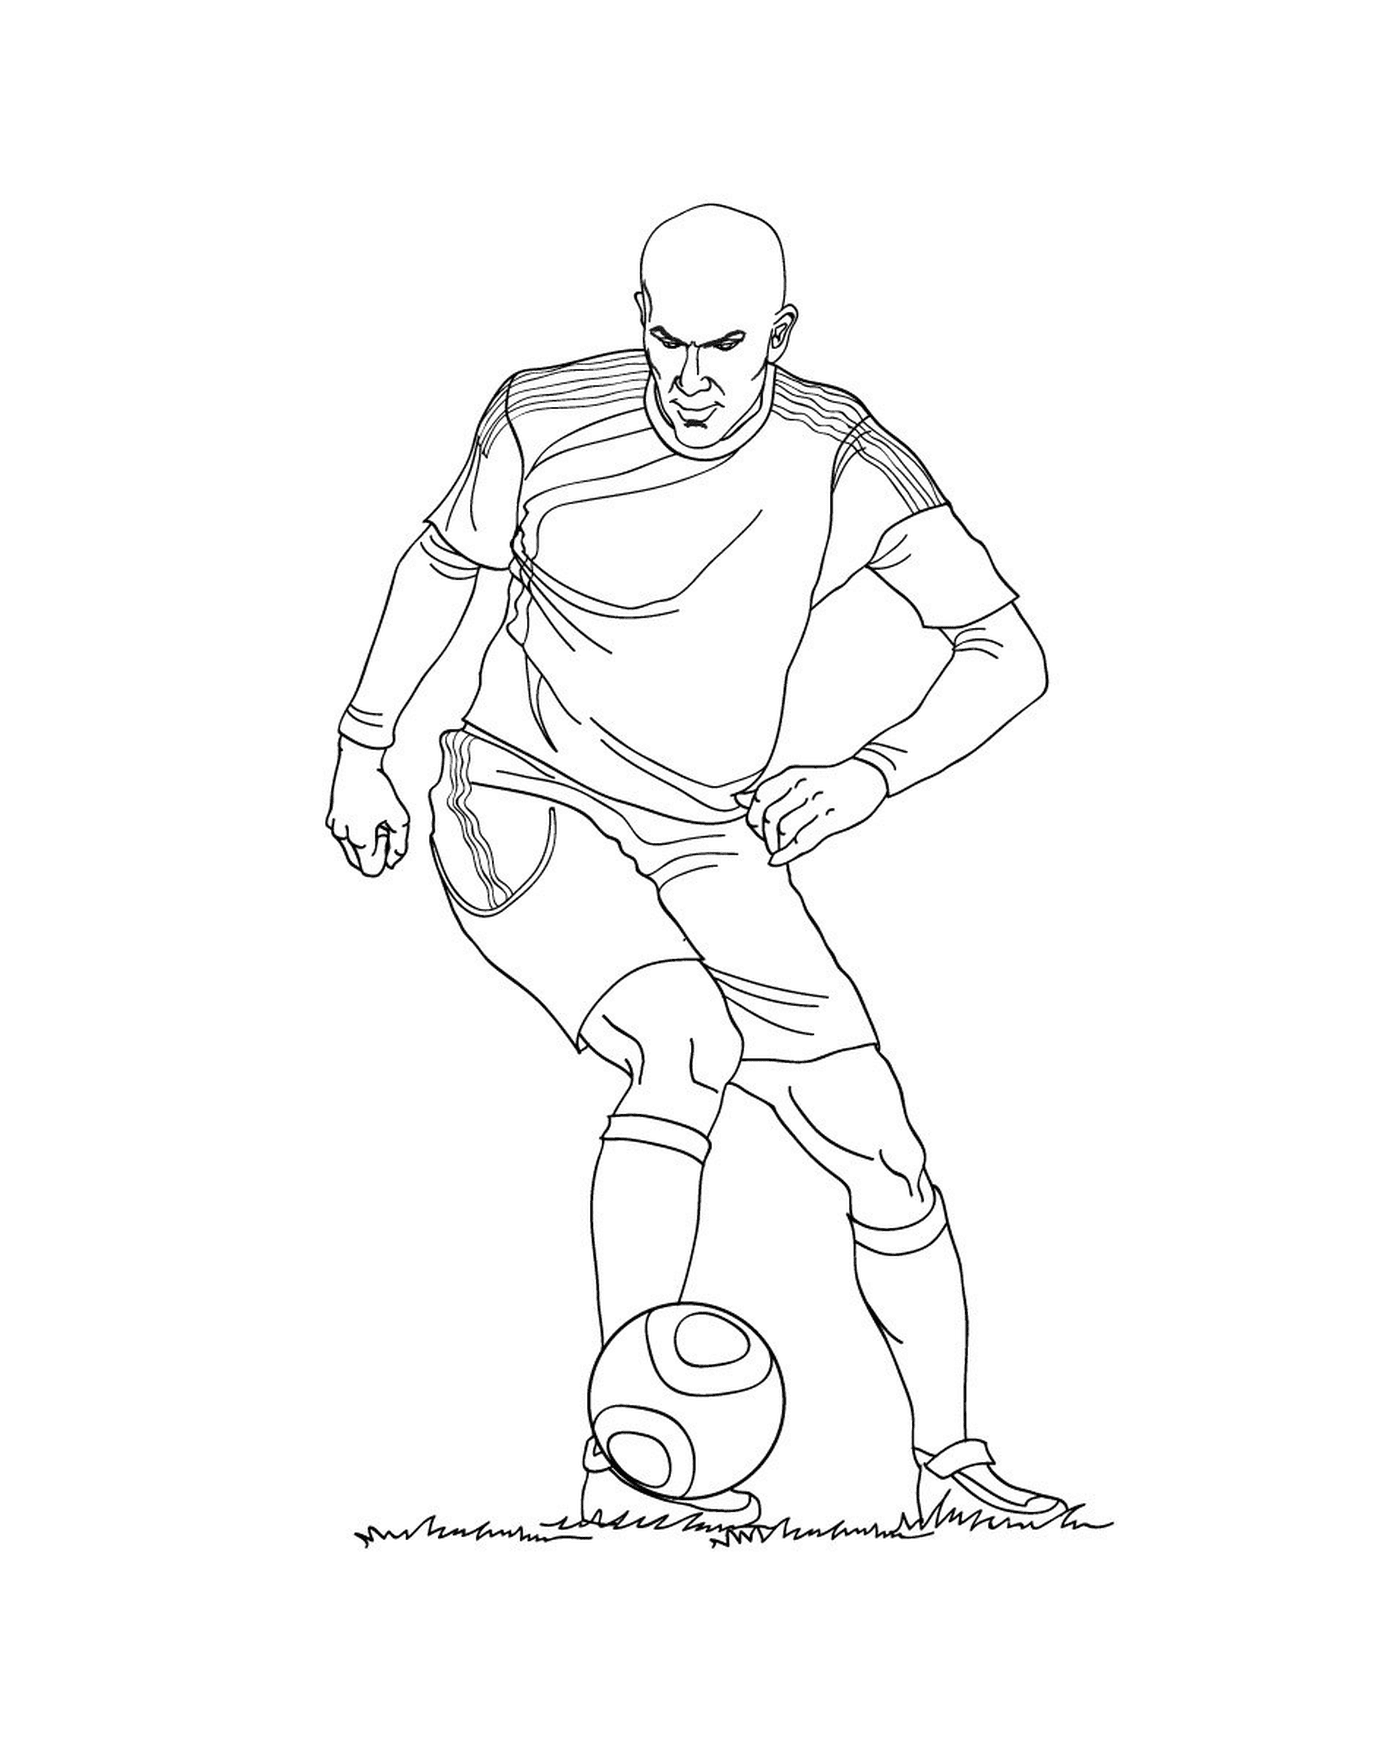  Un jugador de fútbol pateando en una pelota 